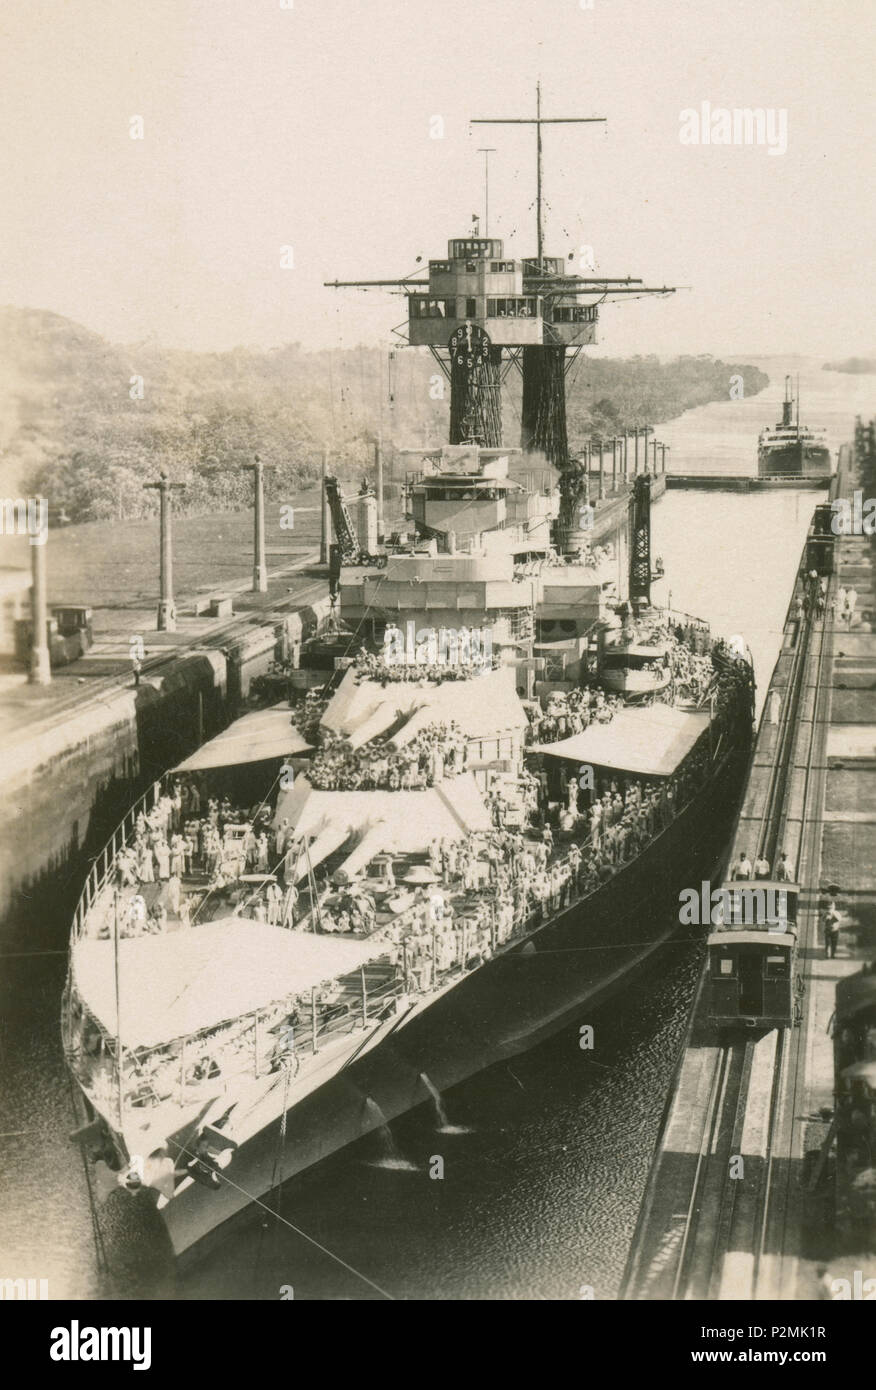 Antique Febbraio 13, 1923 fotografia, USS Maryland (BB-46) nelle serrature Gatun del Canale di Panama. USS Maryland (BB-46), noto anche come "Vecchio Maria' o 'Lotta Maria' al suo crewmates, era un colorado-classe corazzata. Fonte: fotografia originale Foto Stock